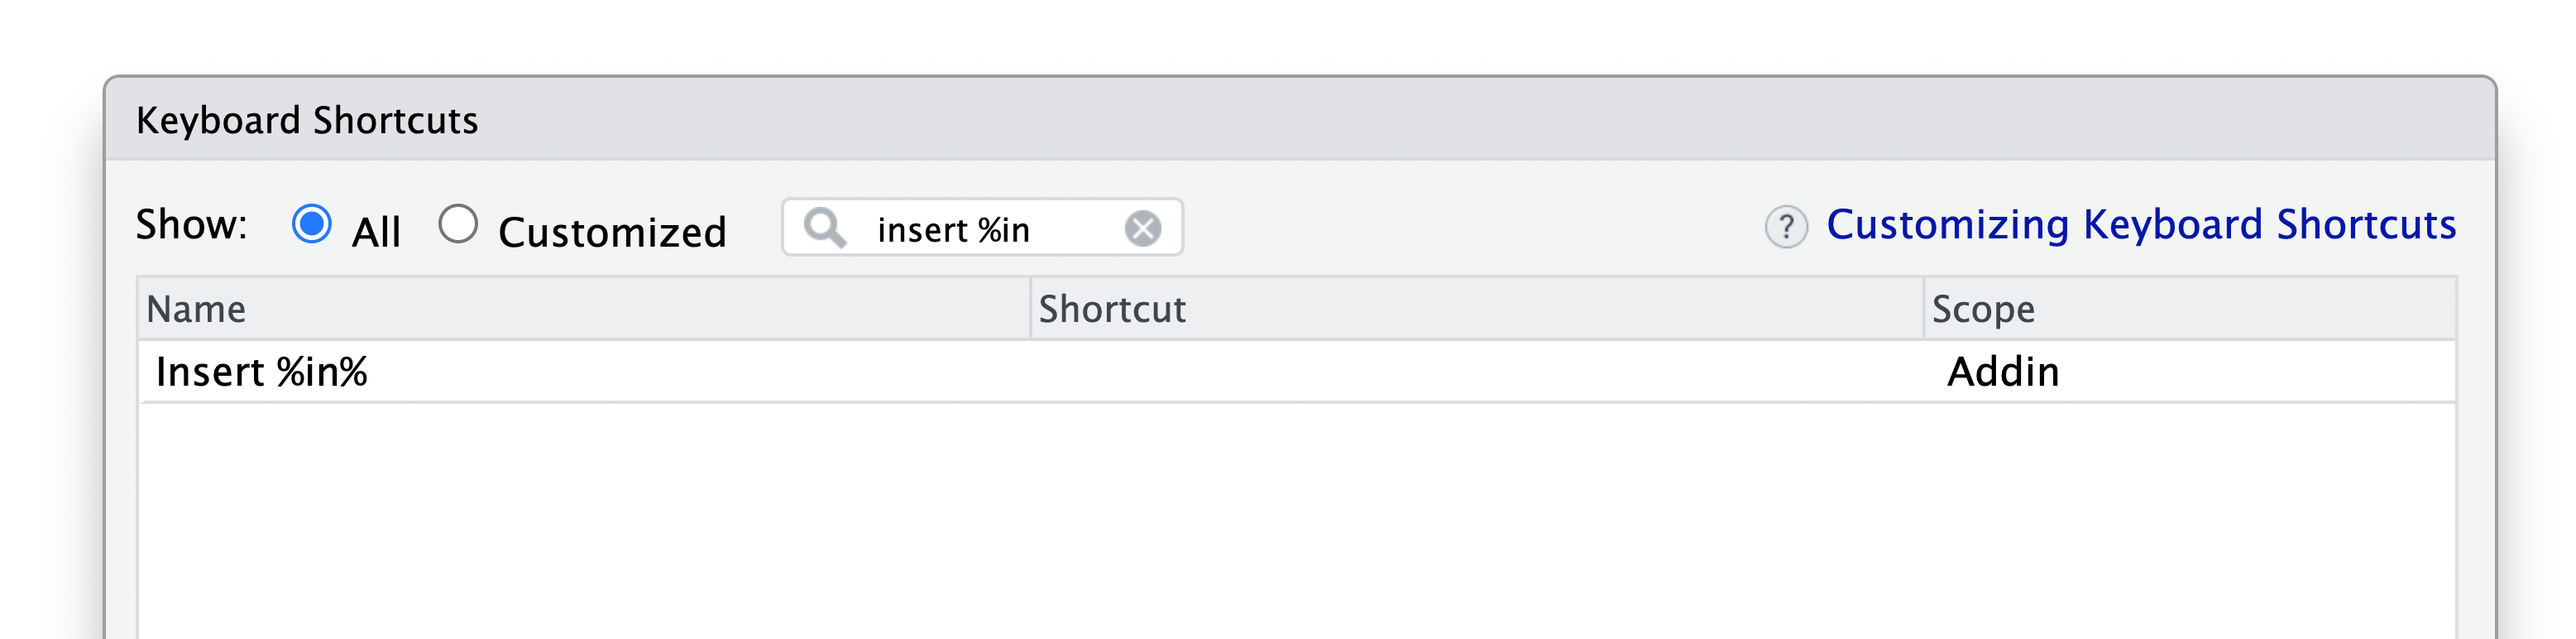 A screenshot of the Customize Keyboard shortcuts menu